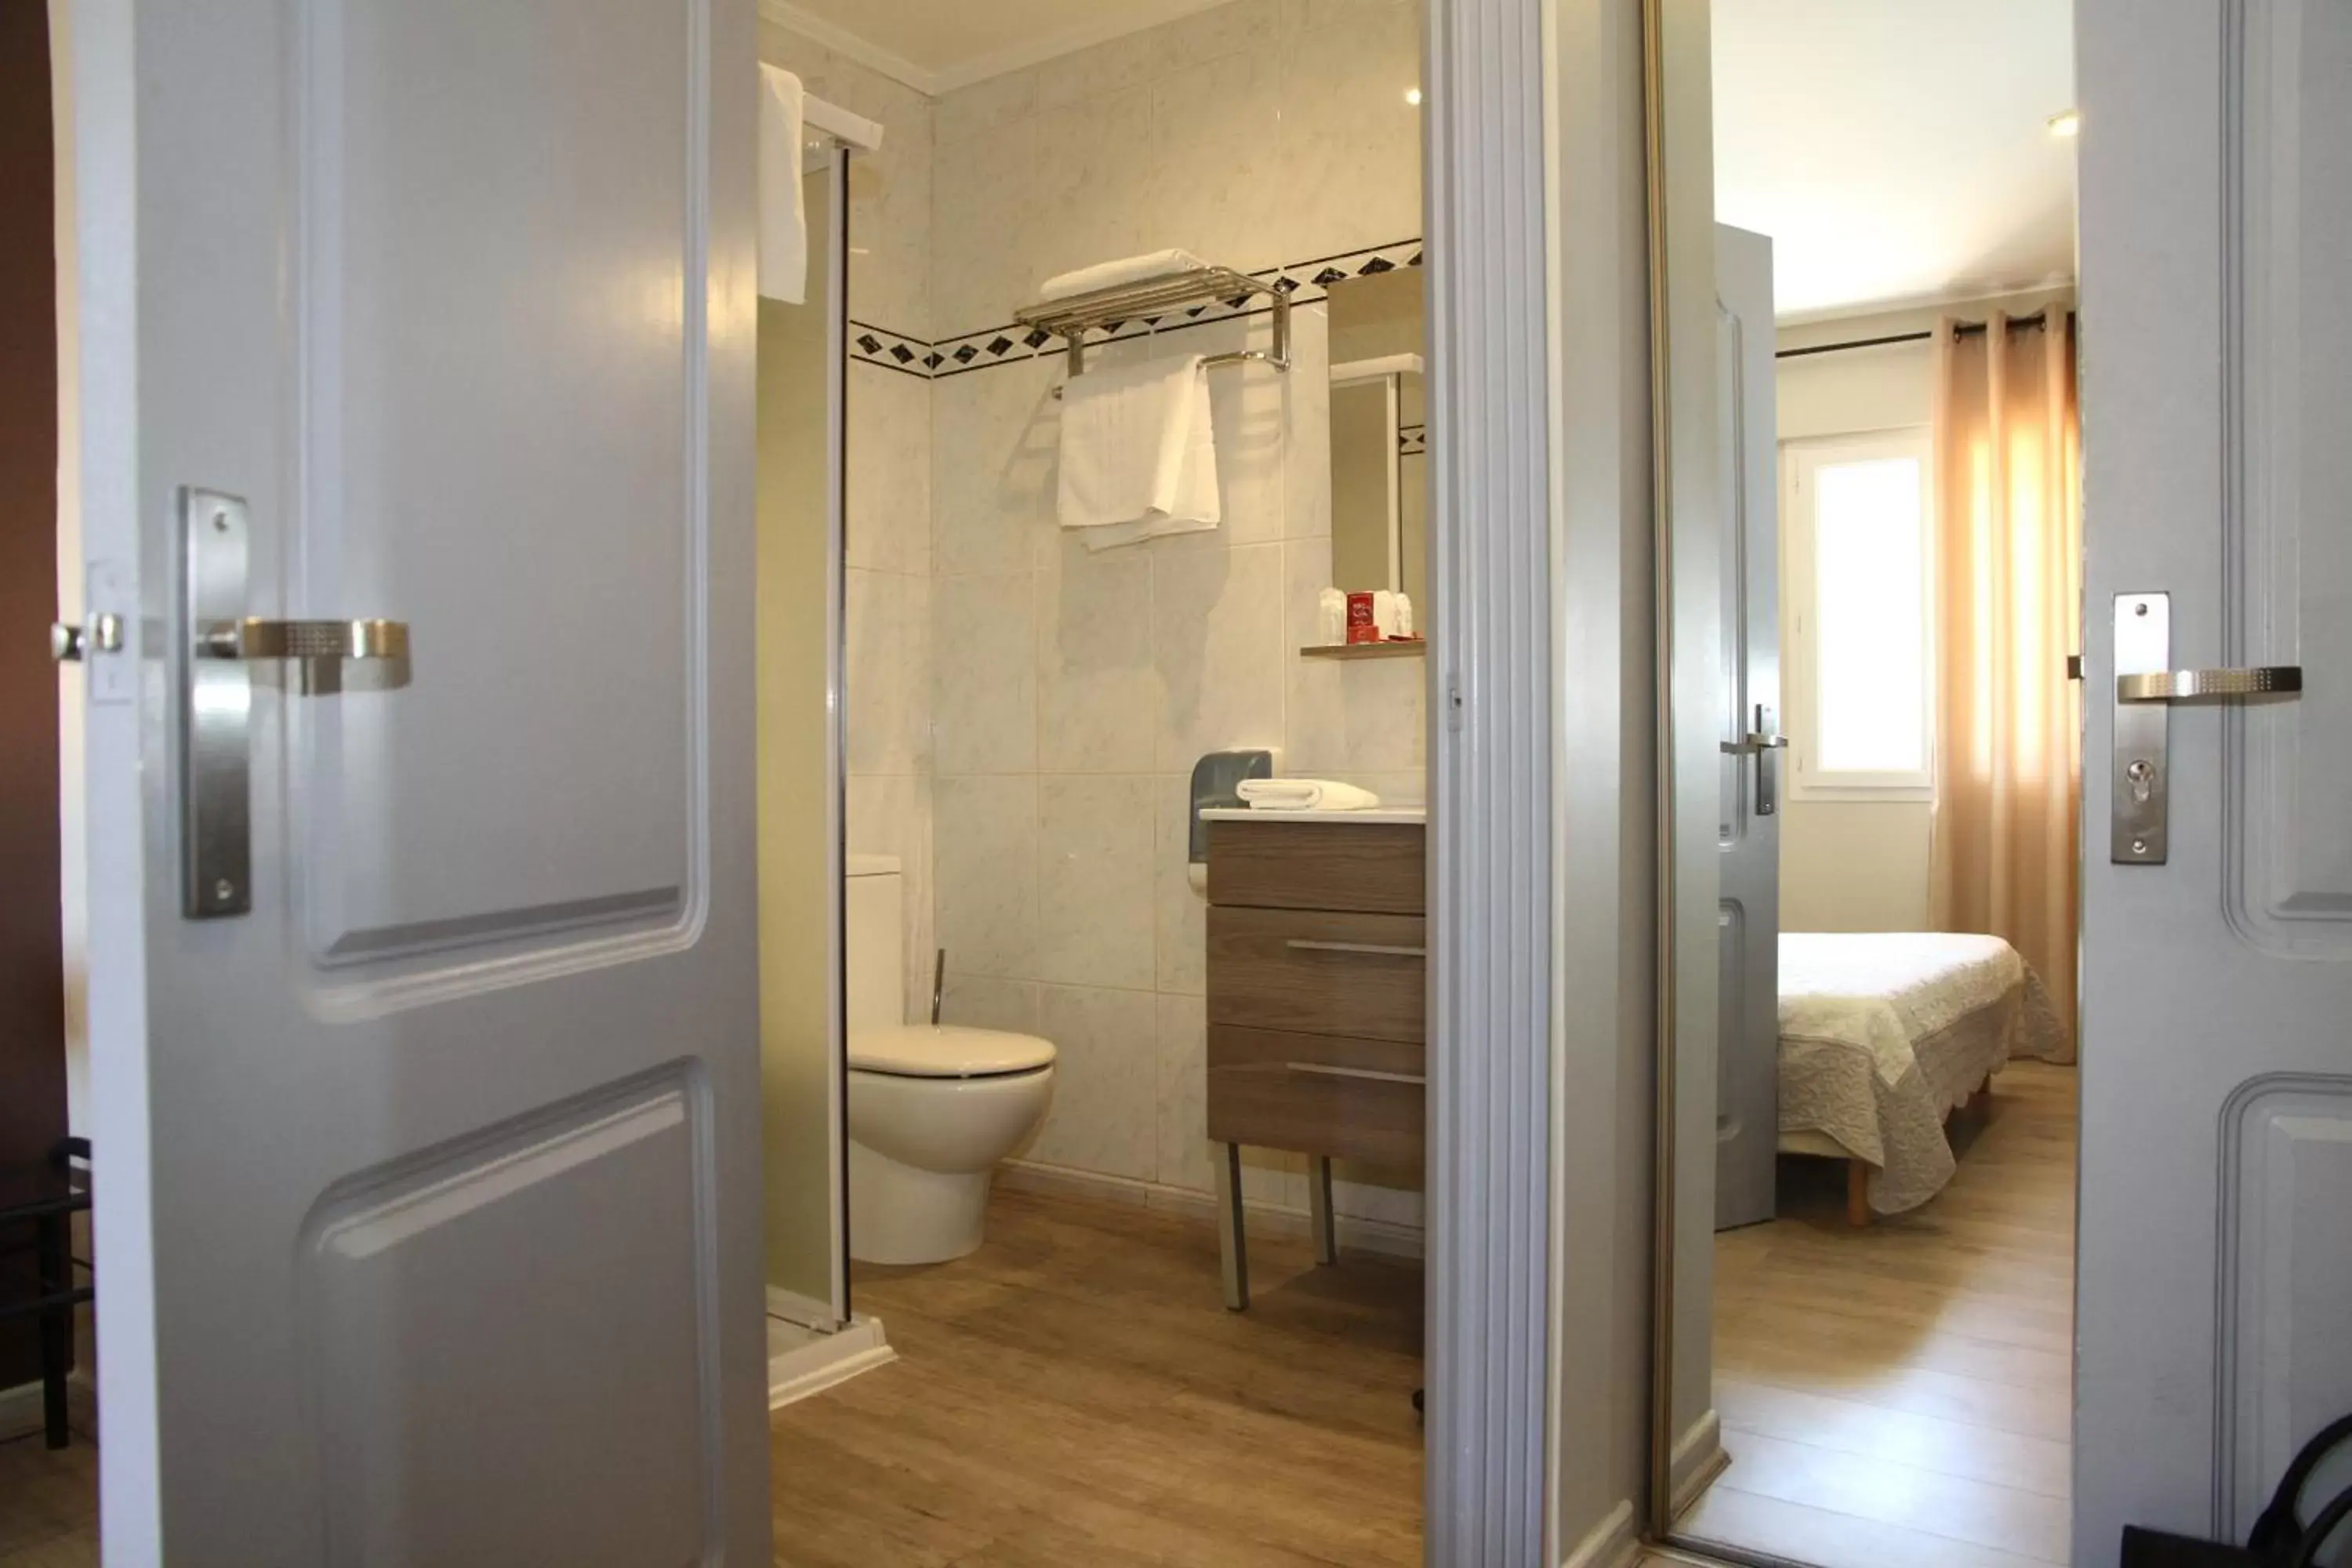 Bathroom in Hotel Saint Germain